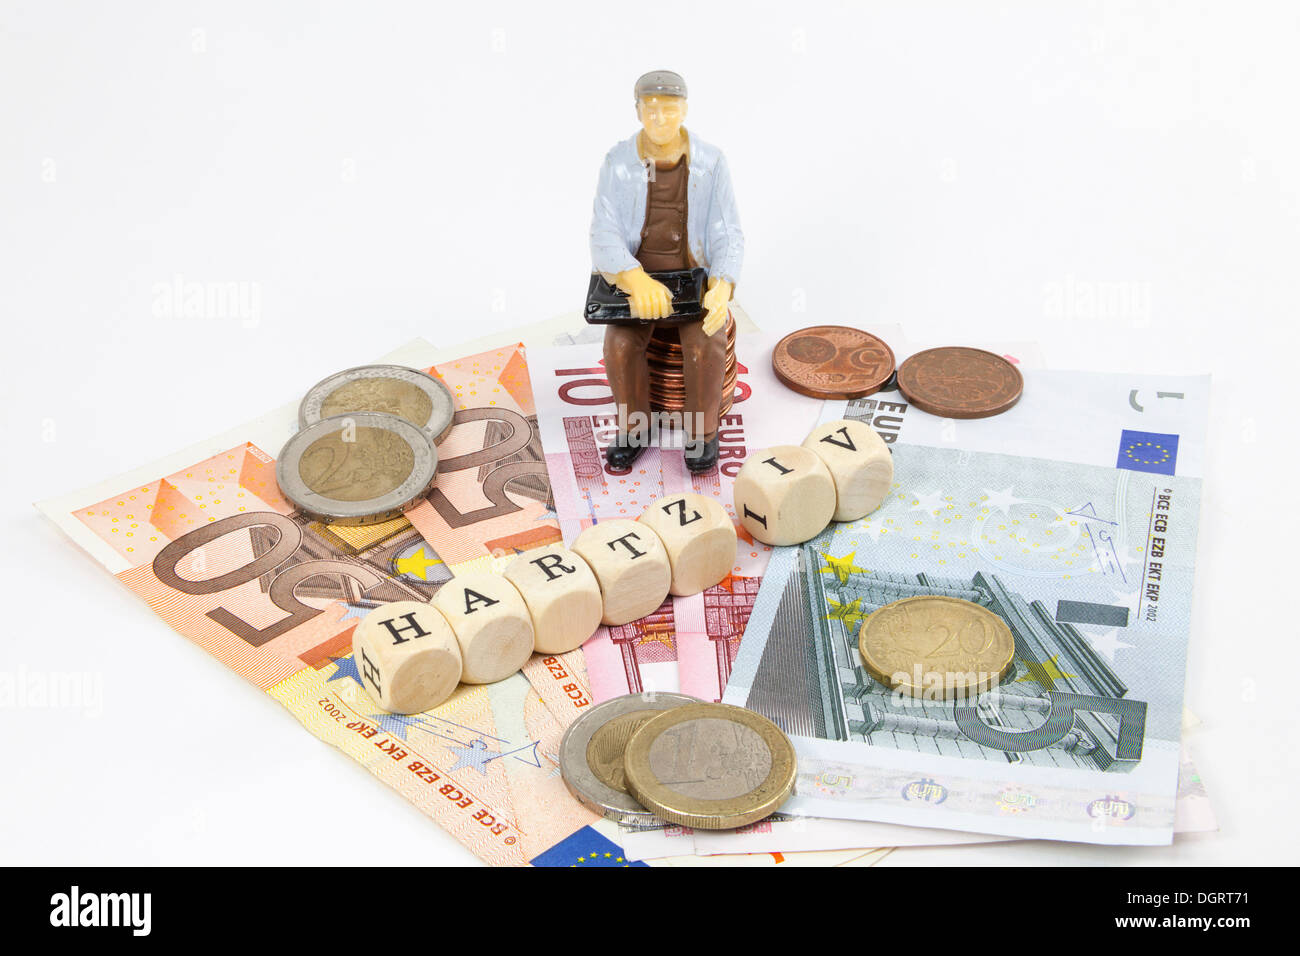 Figura in miniatura di un lavoratore, le banconote in euro, lettera cubi formanti la parola 'Hartz IV' tedesco il sostegno al reddito sovvenzione, simbolico Foto Stock